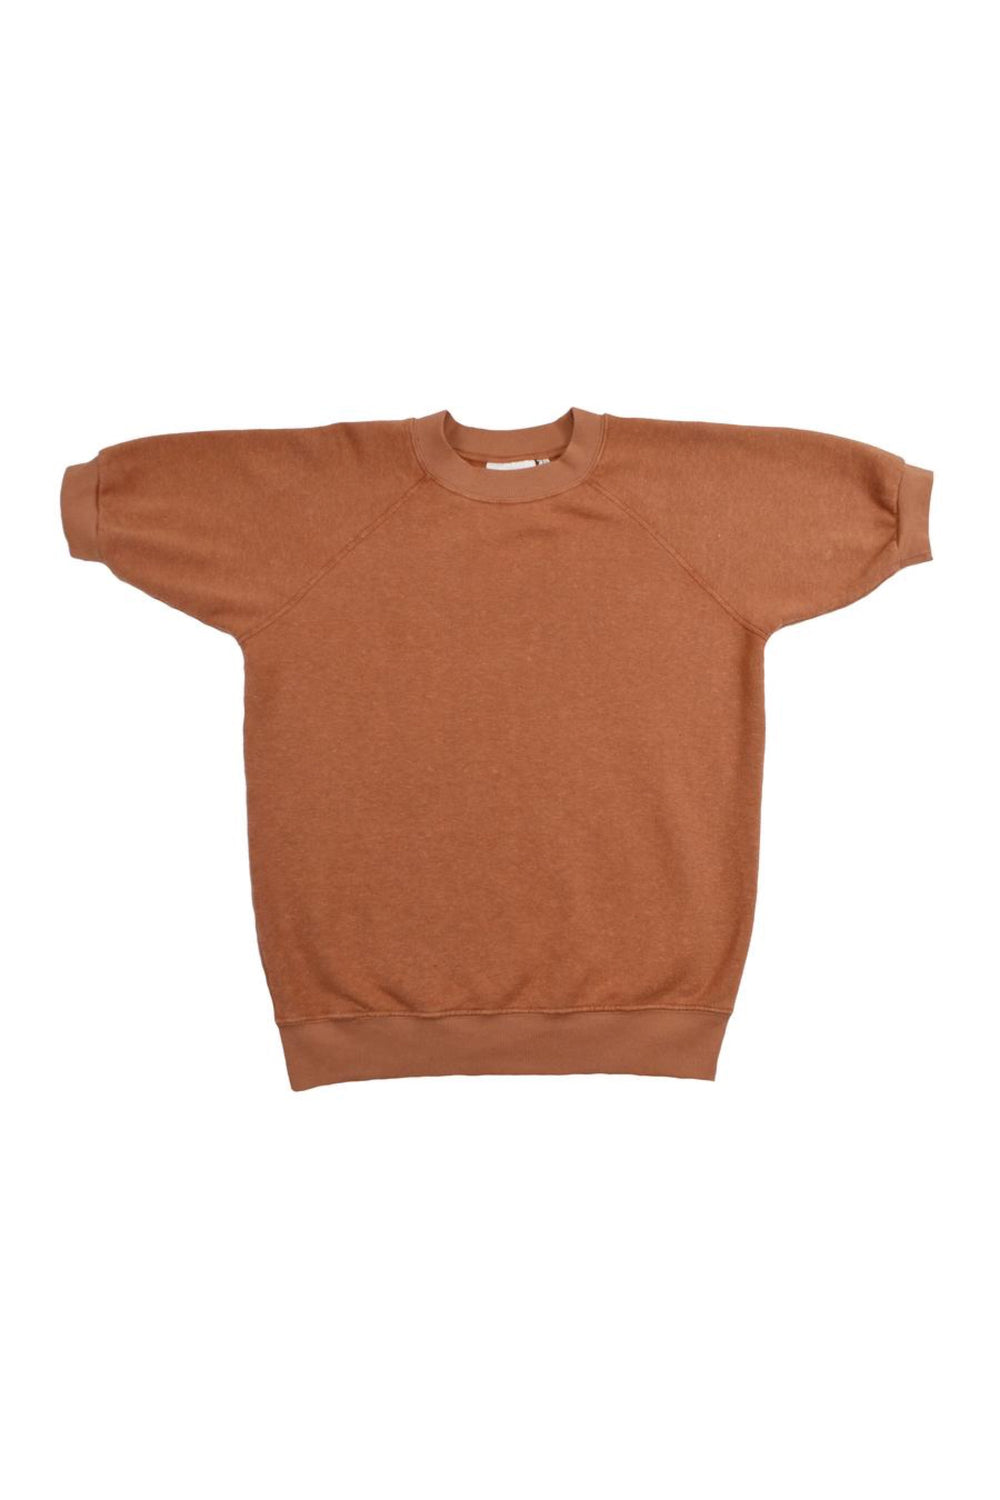 Terracotta S/S Raglan Sweatshirt